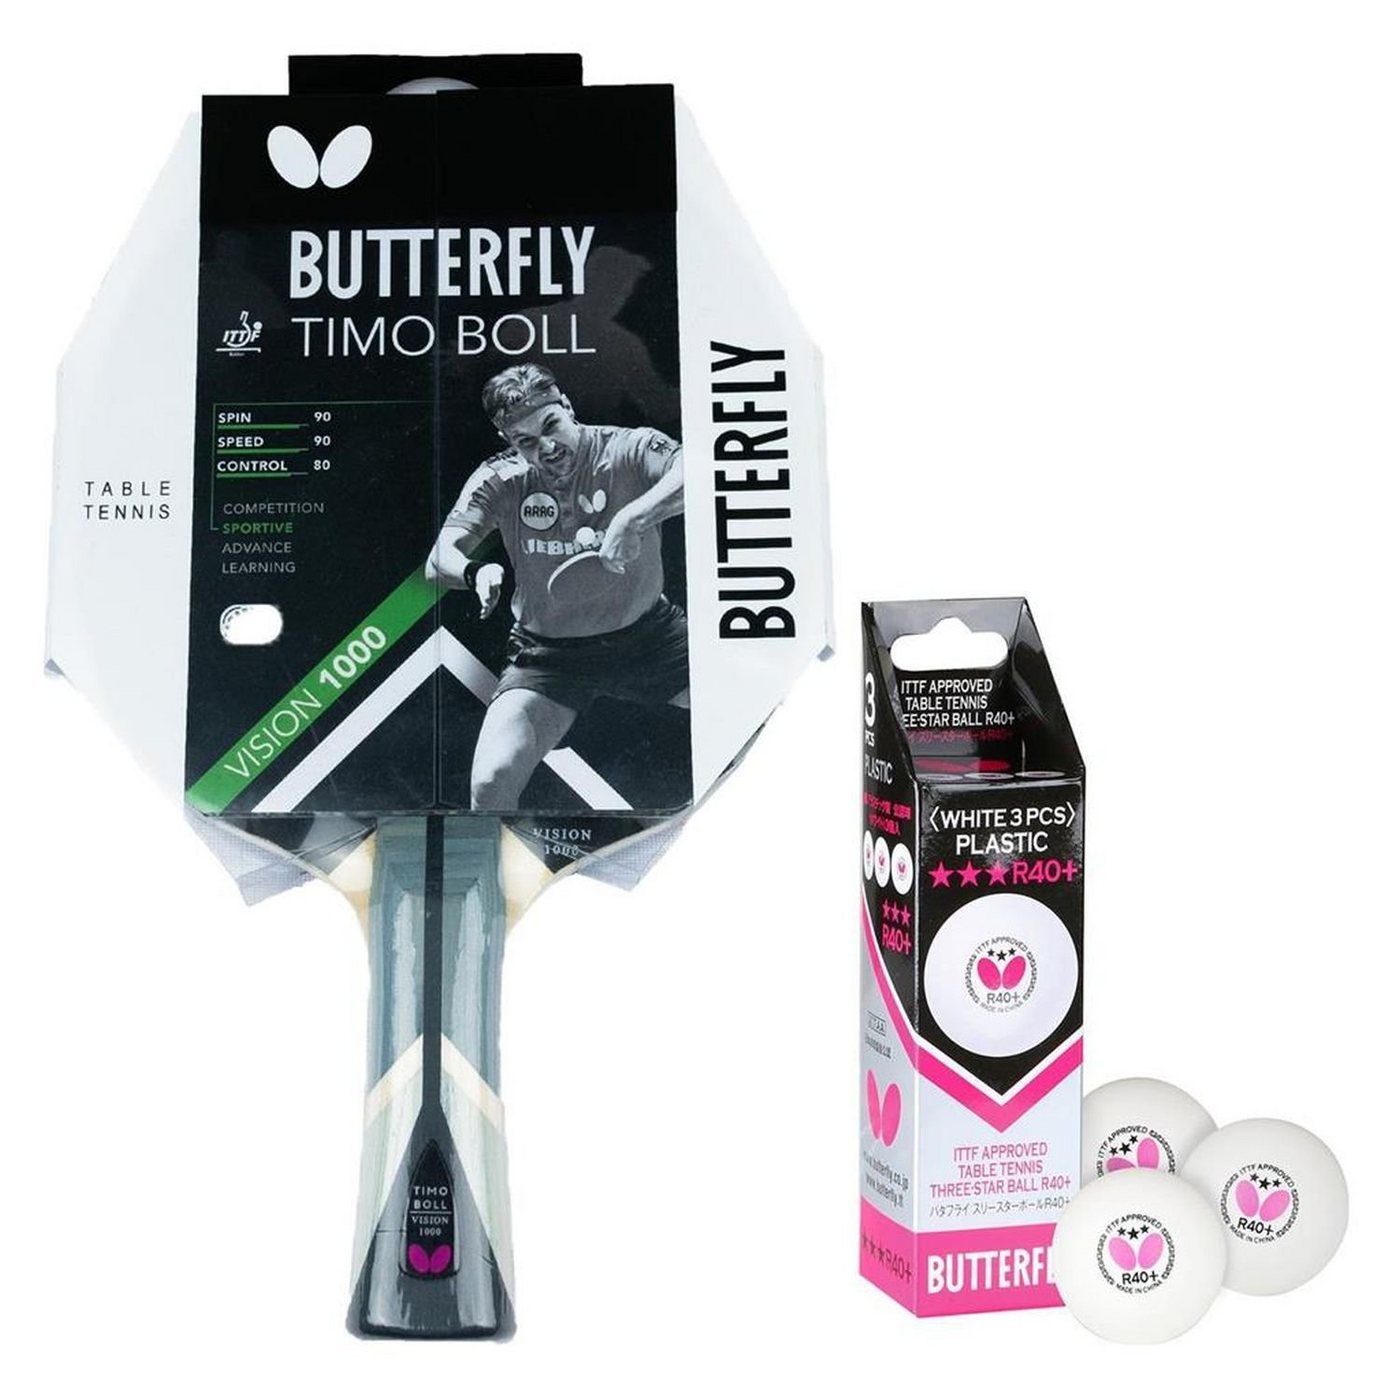 Butterfly Tischtennisschläger 1x Timo Boll Vision 1000 + Bälle, Tischtennis Schläger Set Tischtennisset Table Tennis Bat Racket von Butterfly